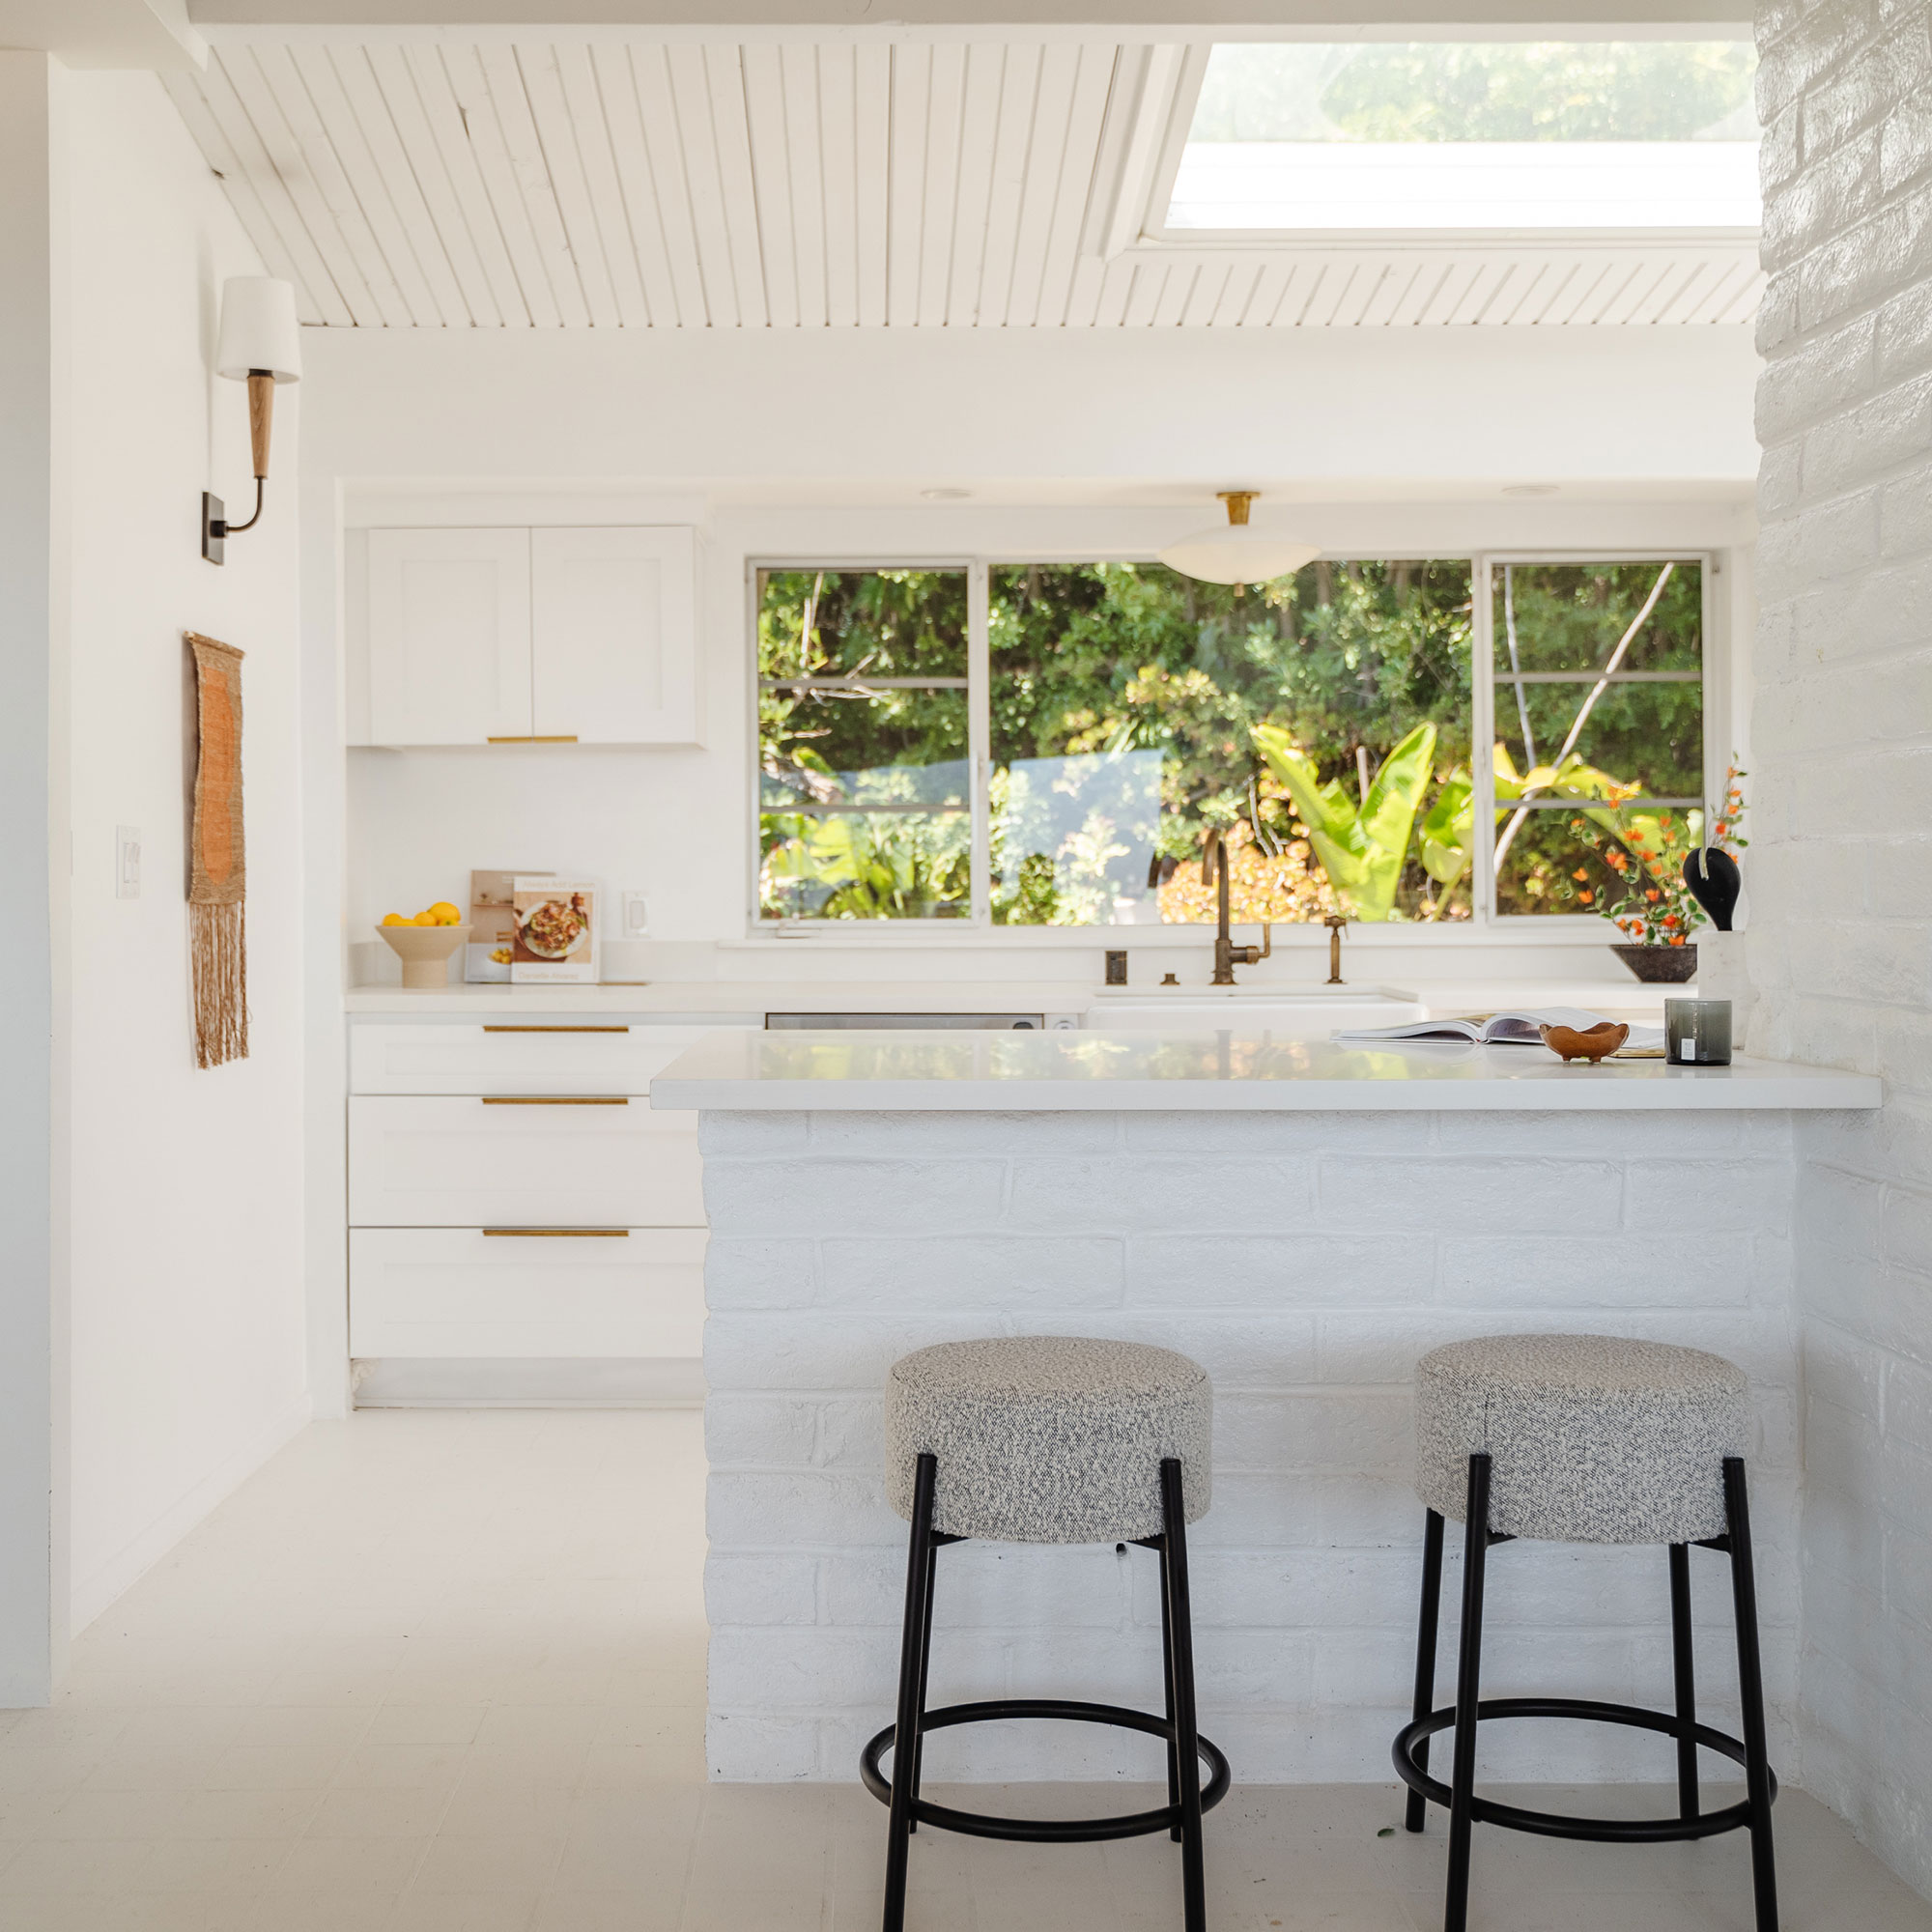 Dapur serba putih dengan kursi bar di konter dan jendela besar di belakang